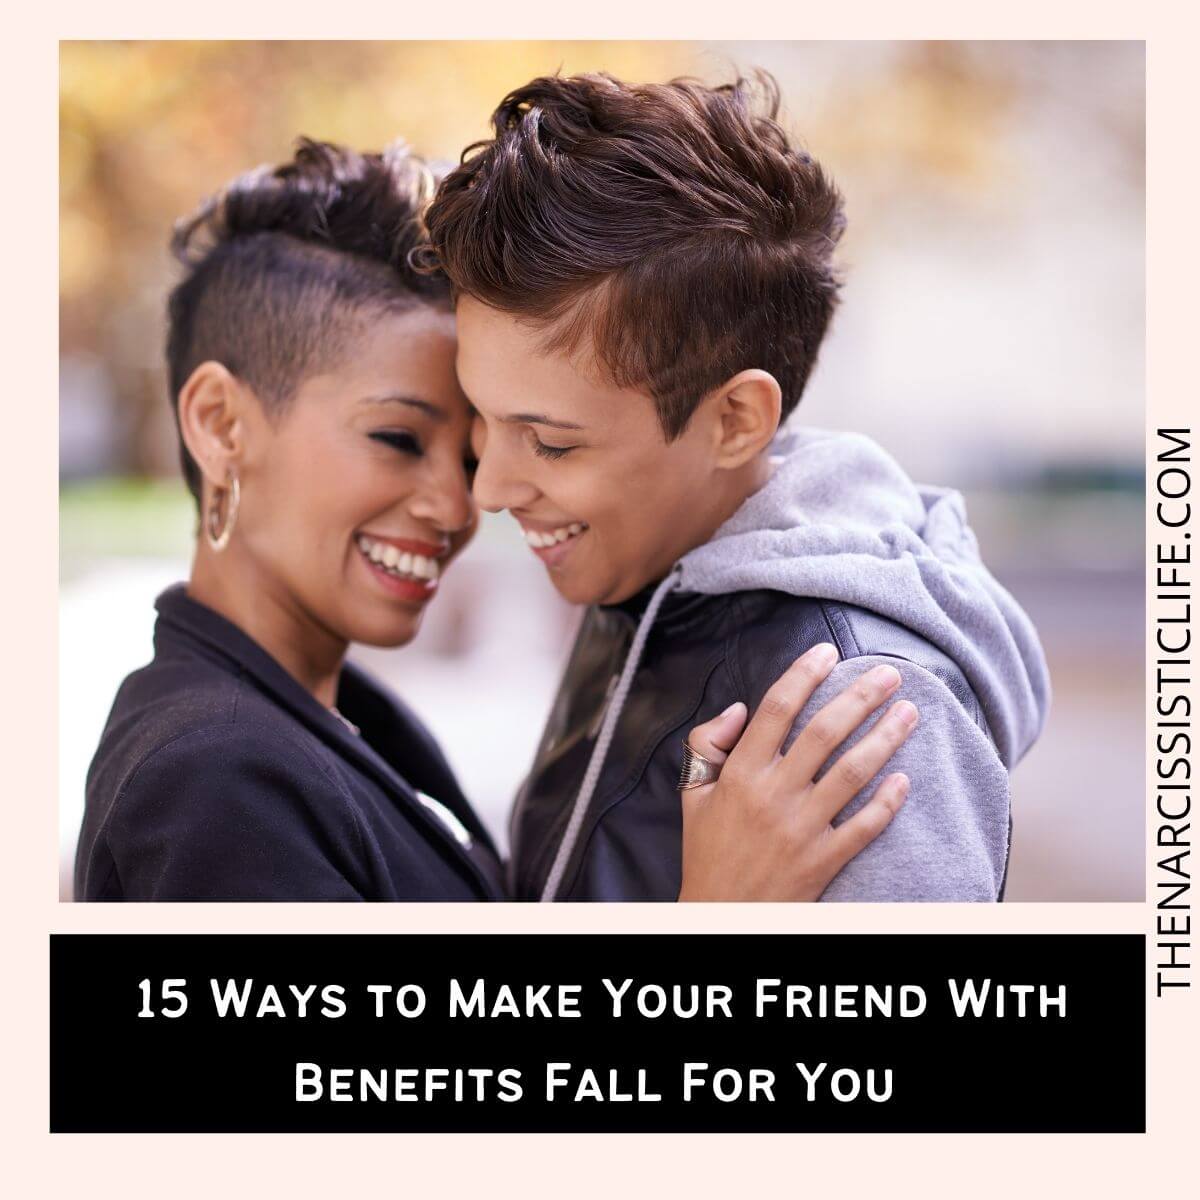 Как сделать так, чтобы друзья с привилегиями влюбились в вас (FWB)